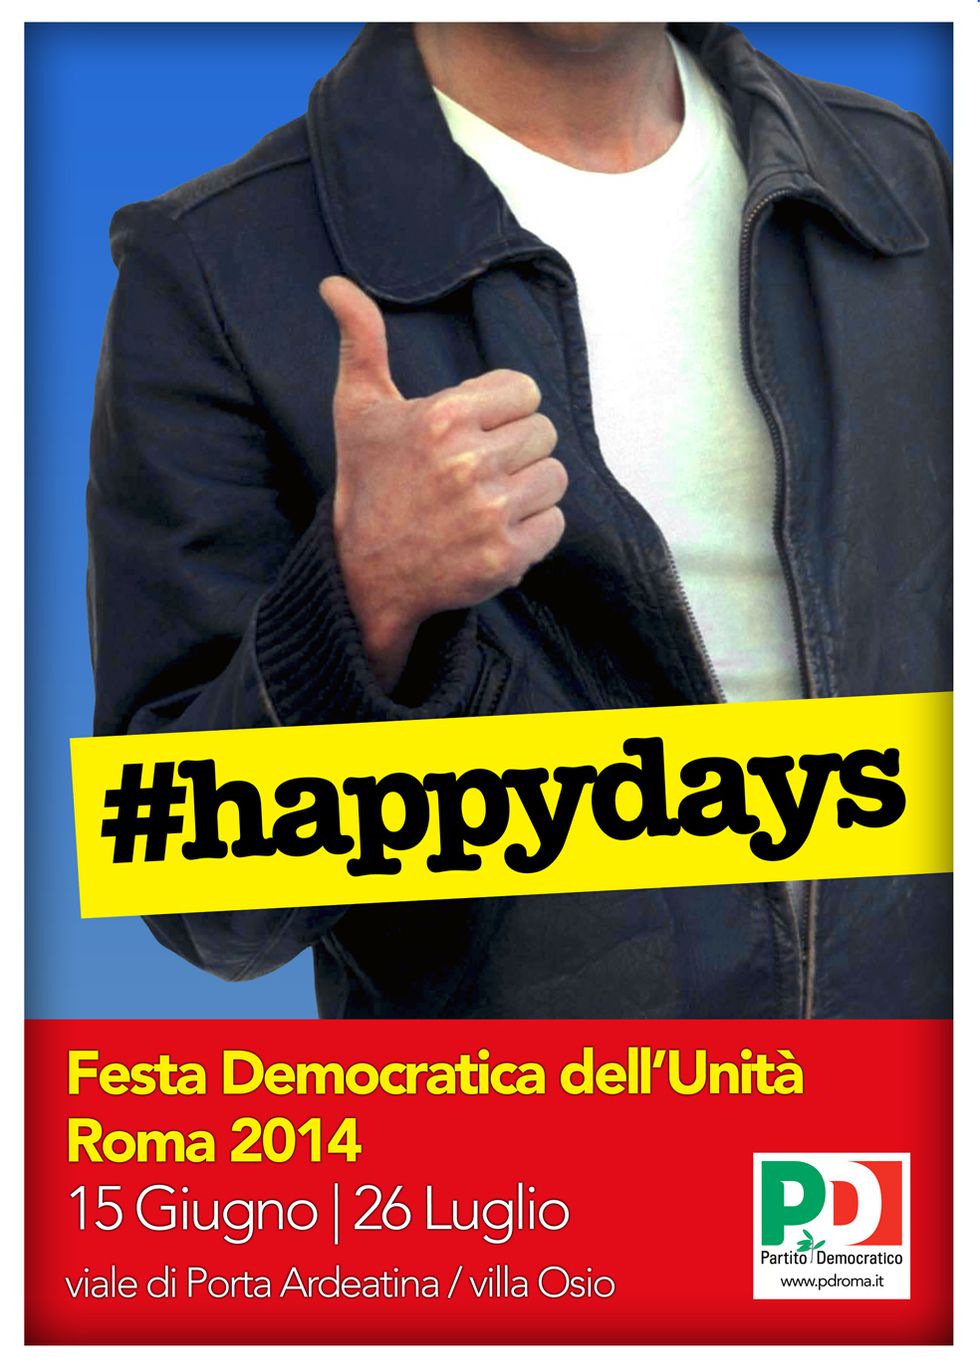 La Festa dell'Unità, Fonzie e gli #happydays del Pd